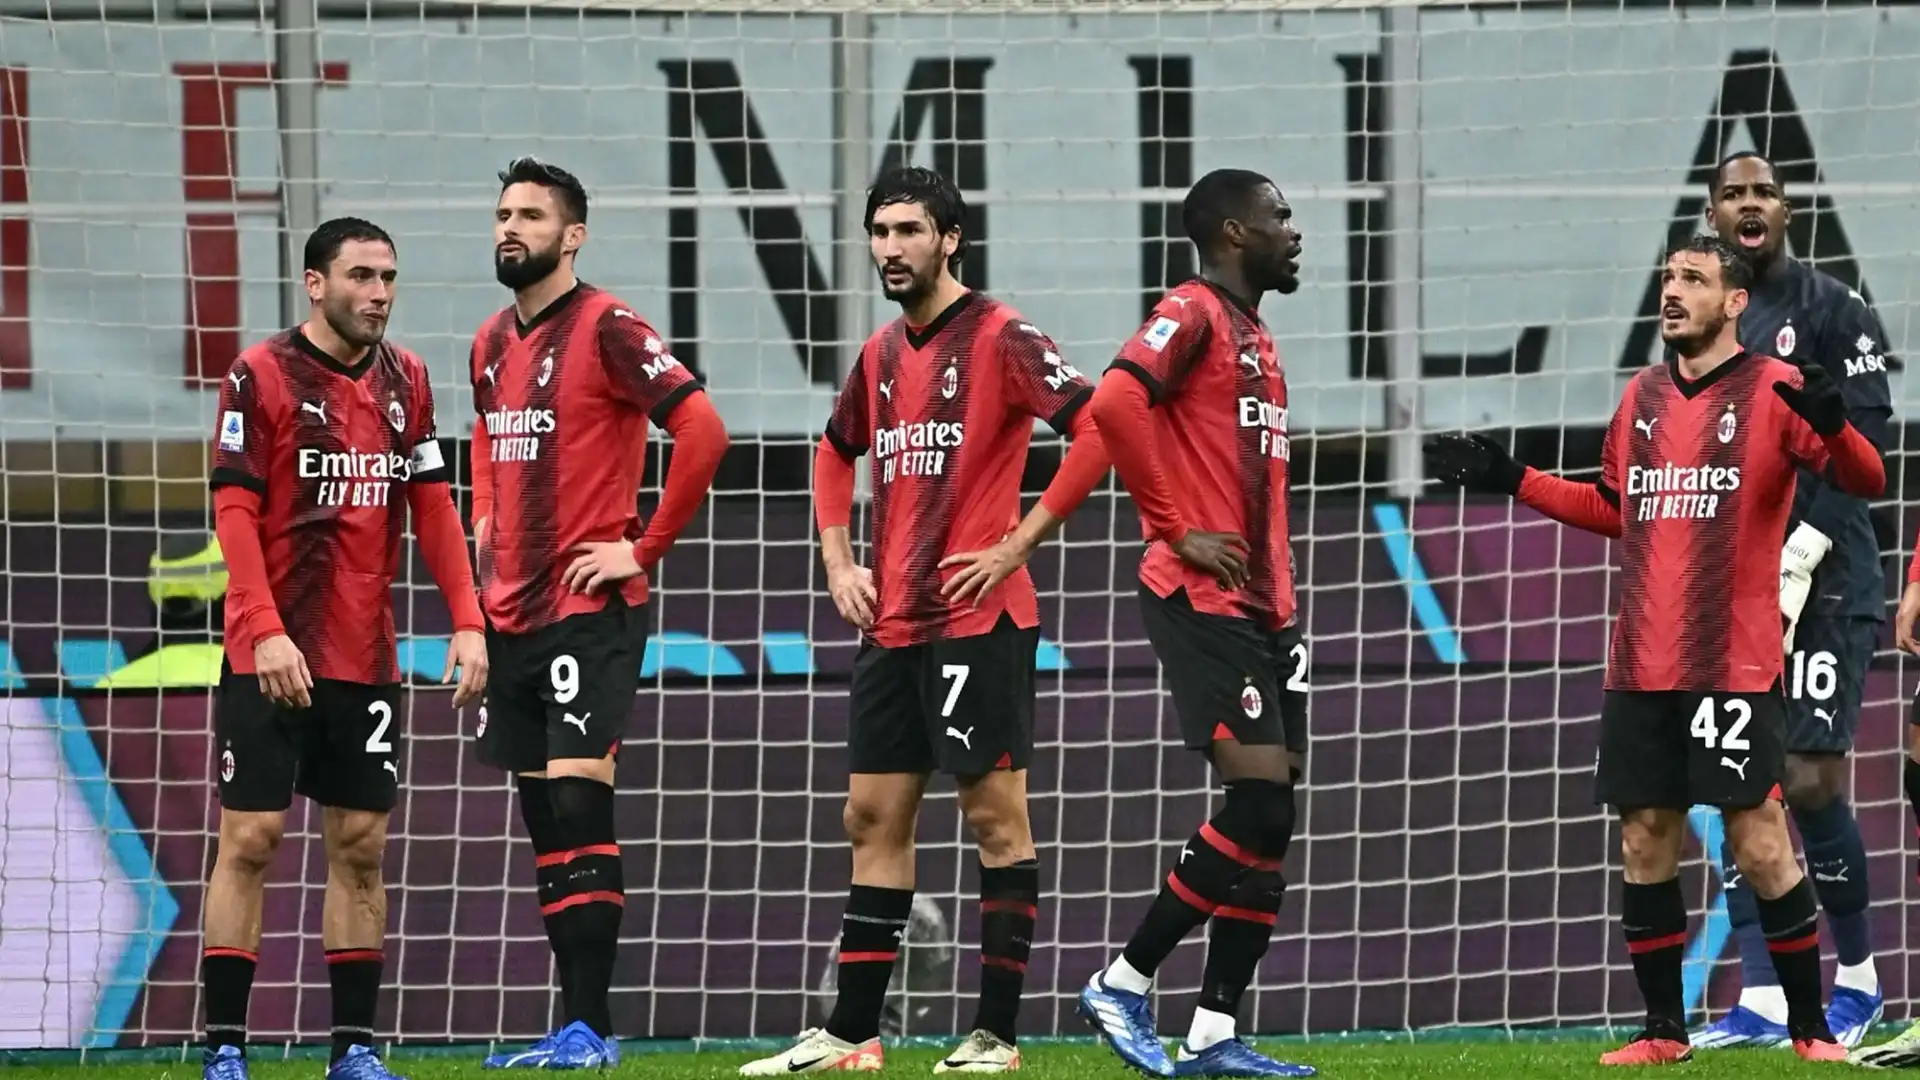 La brutta sconfitta contro l'Udinese fa suonare l'allarme rosso in casa Milan: ai rossoneri non serve solo un difensore, ma anche un attaccante